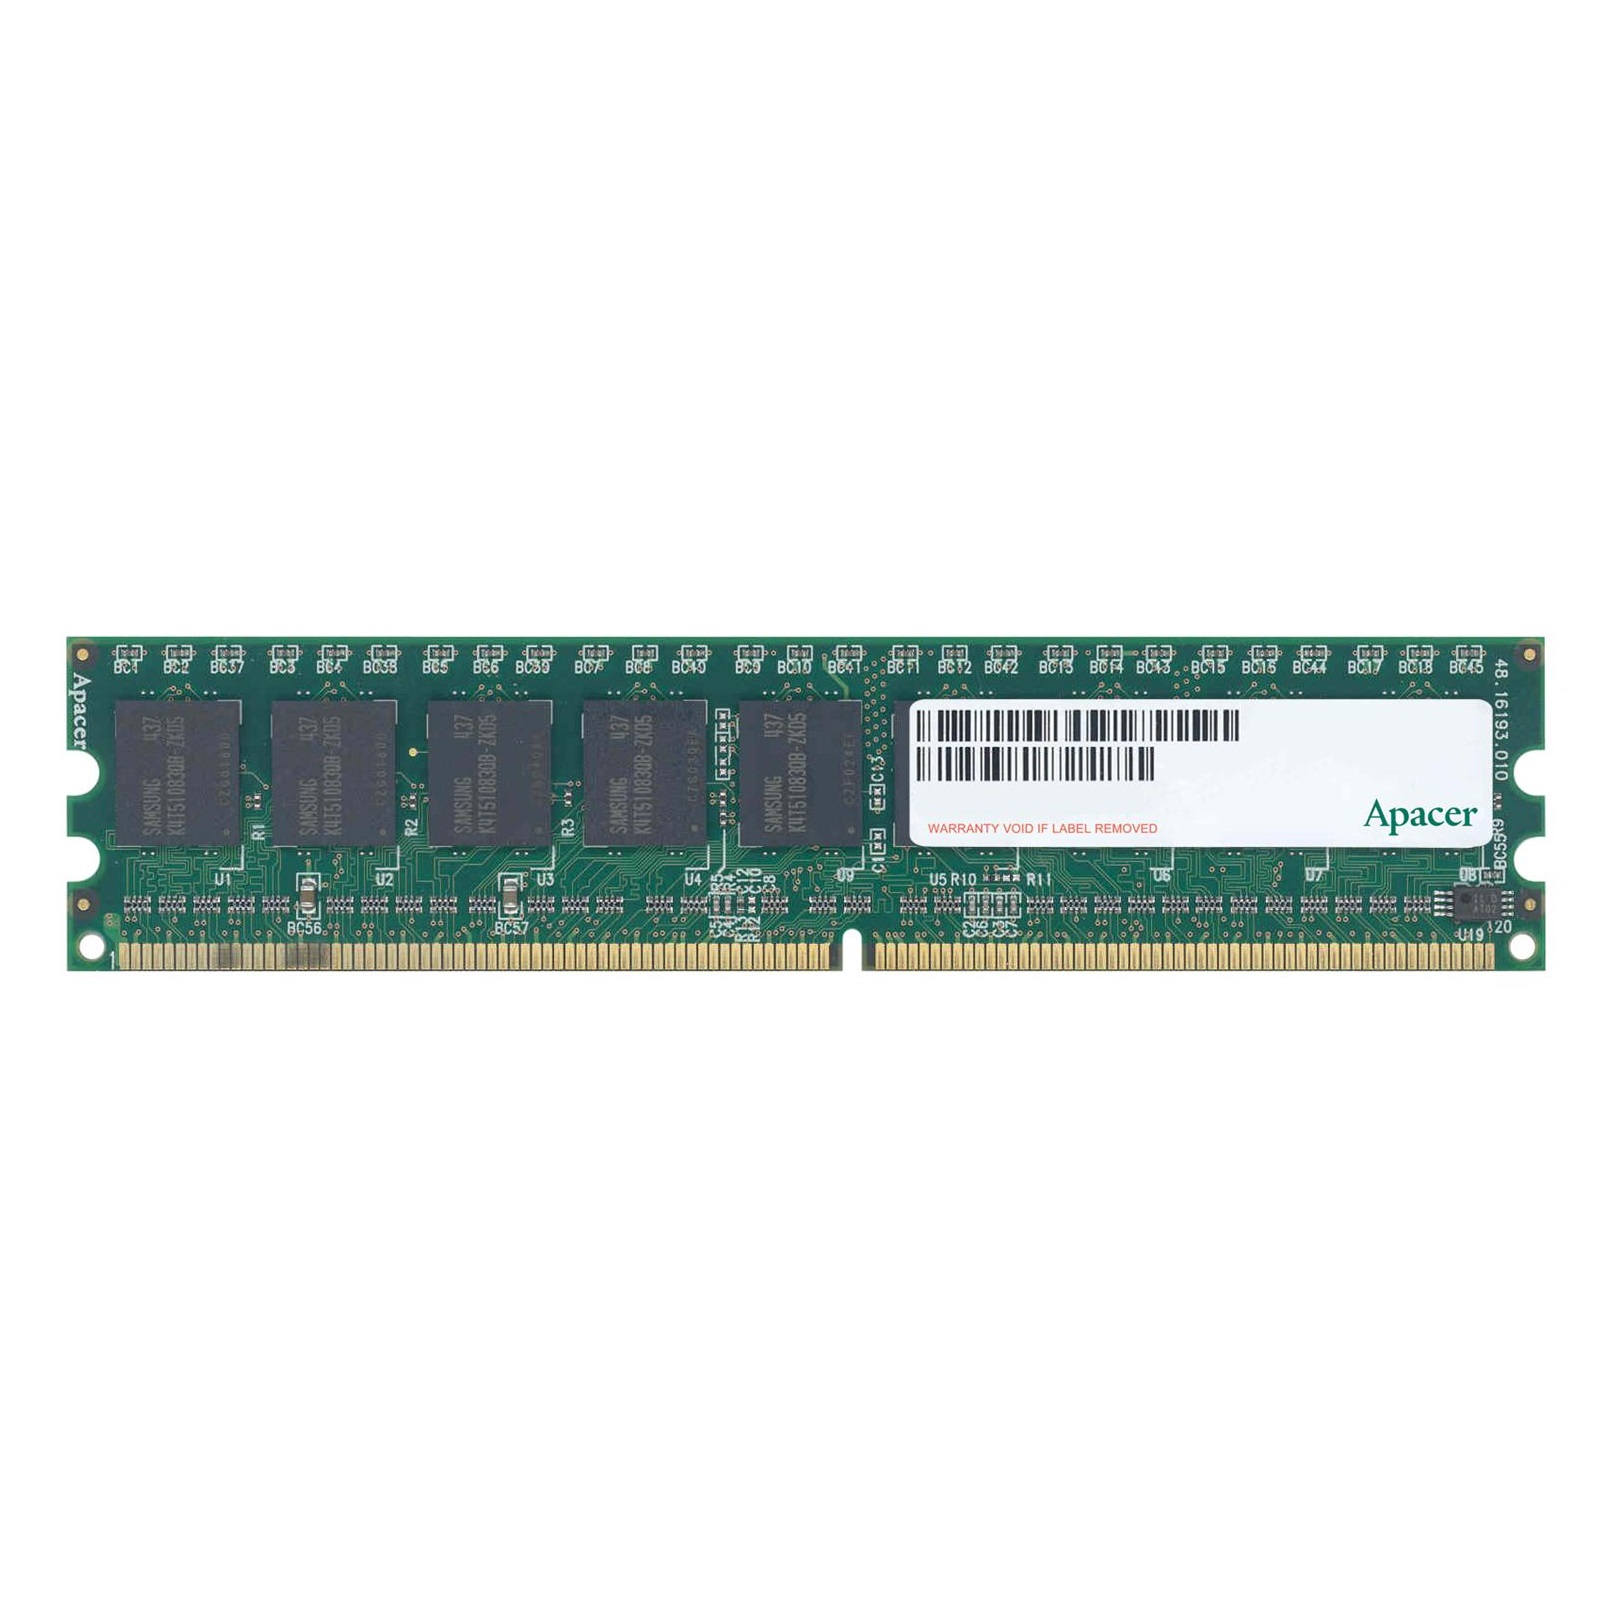 رم دسکتاپ DDR2 تک کاناله 800 مگاهرتز CL5 اپیسر مدل UNB ظرفیت 1 گیگابایت